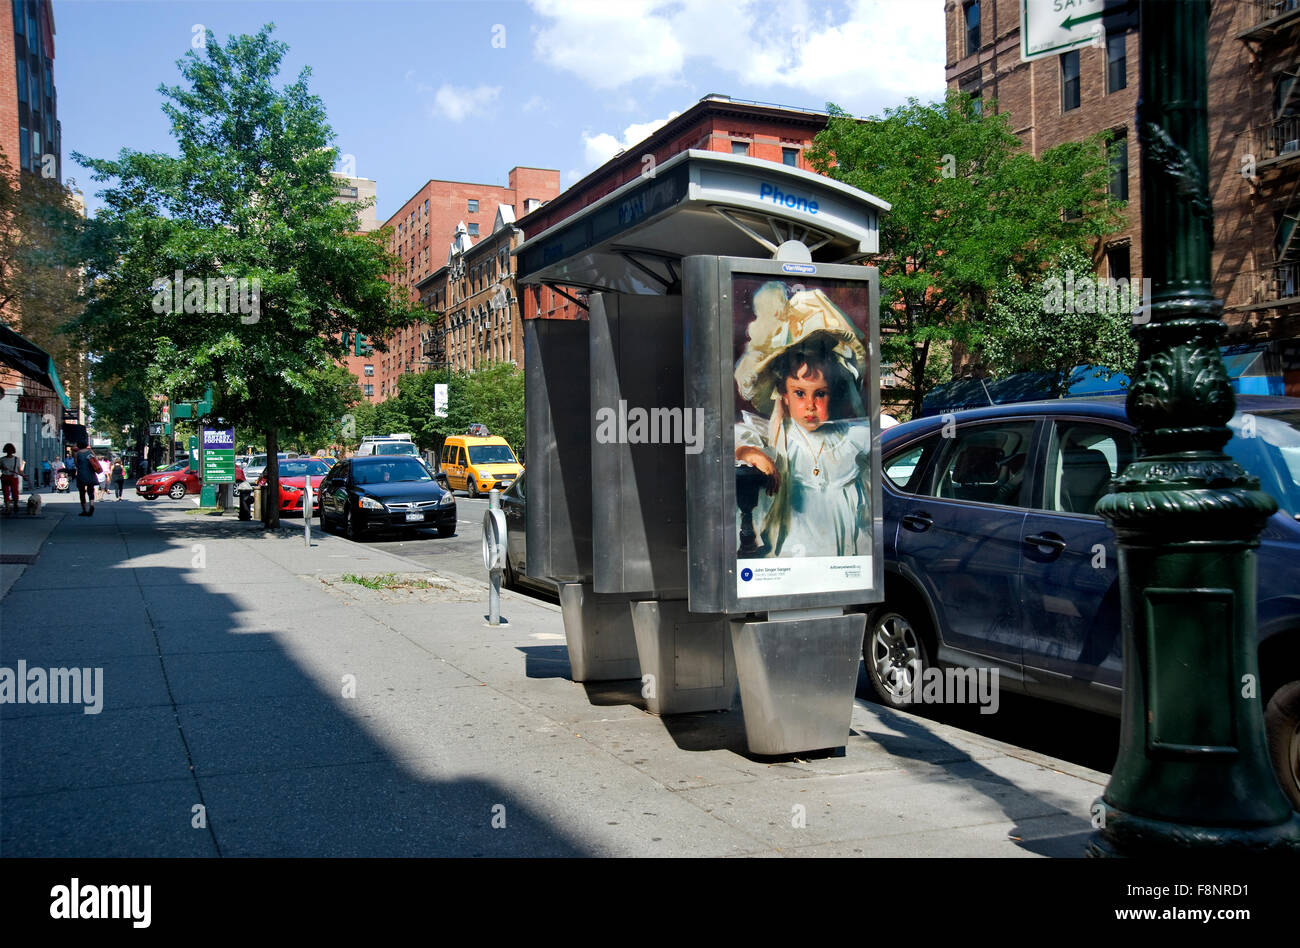 Une peinture de John Singer Sargent est reproduit sur un kiosque d'une cabine téléphonique à New York dans le cadre de l'événement Art partout. Banque D'Images